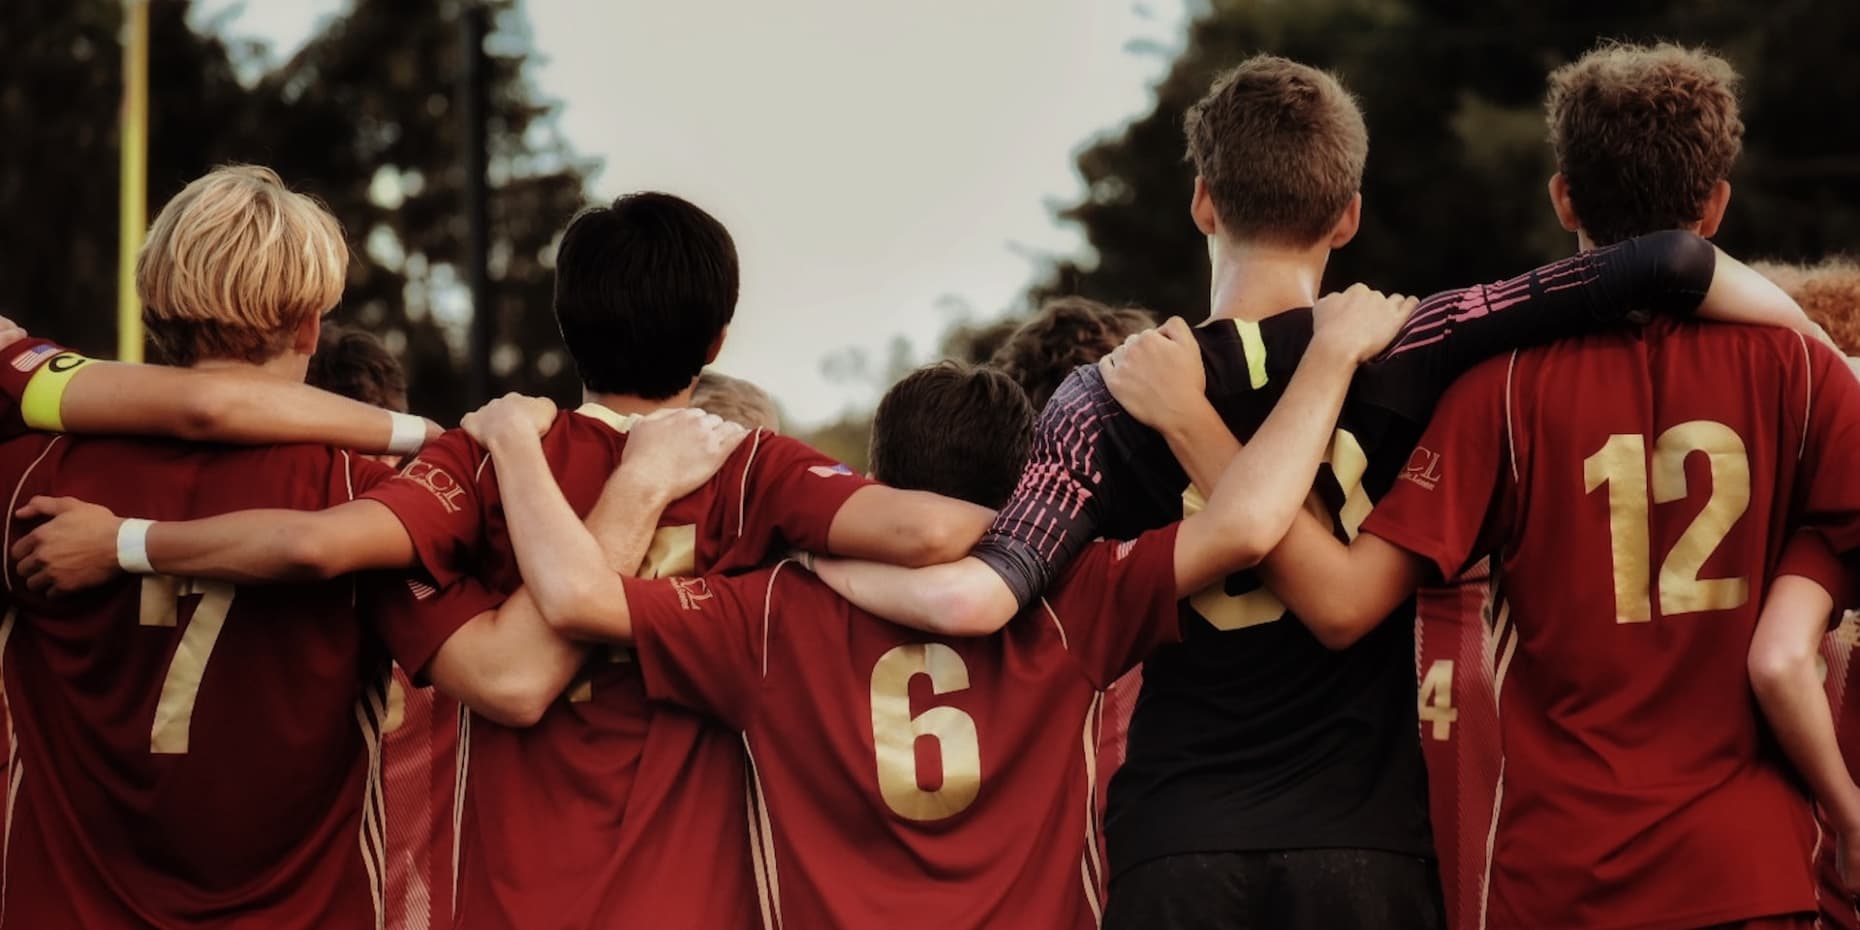 Chłopcy z drużyny piłkarskiej stoją obejmując się ramionami, sfotografowani od tyłu.